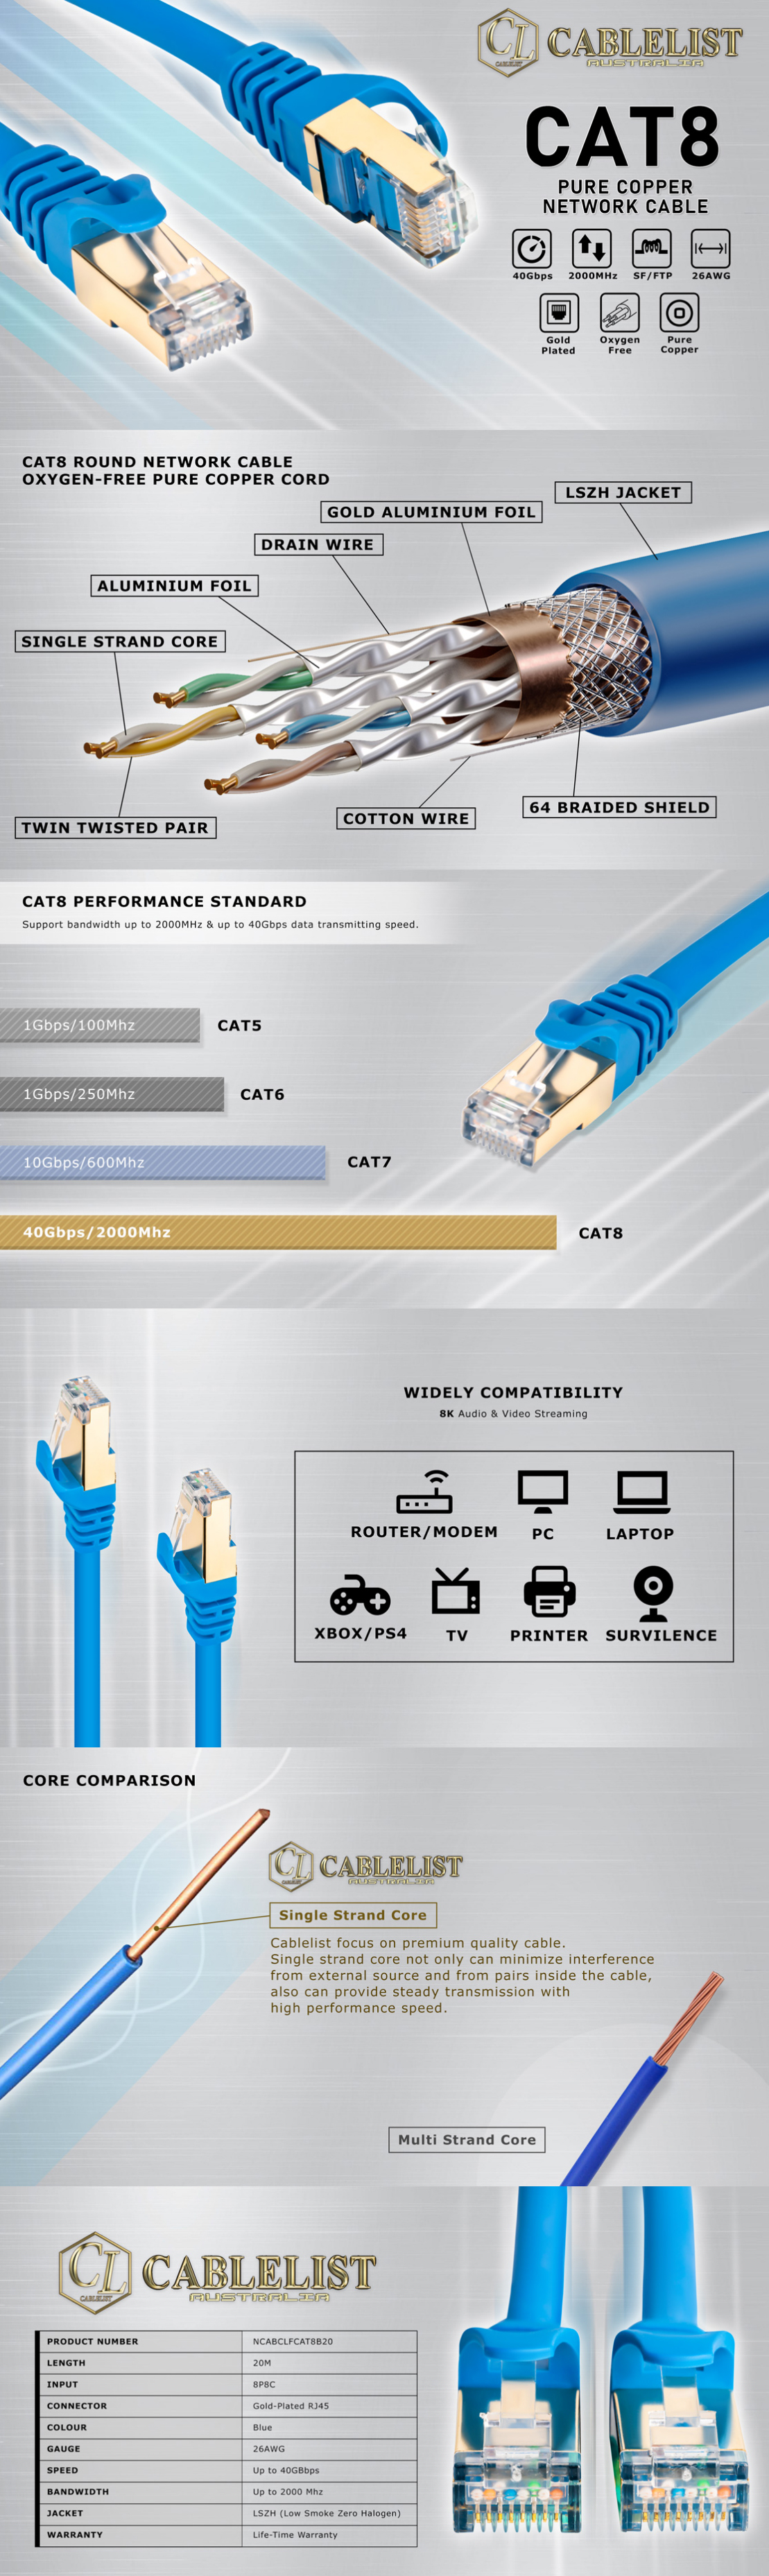 Network-Cables-Cablelist-CAT8-RJ45-Ethernet-Cable-20m-Blue-2